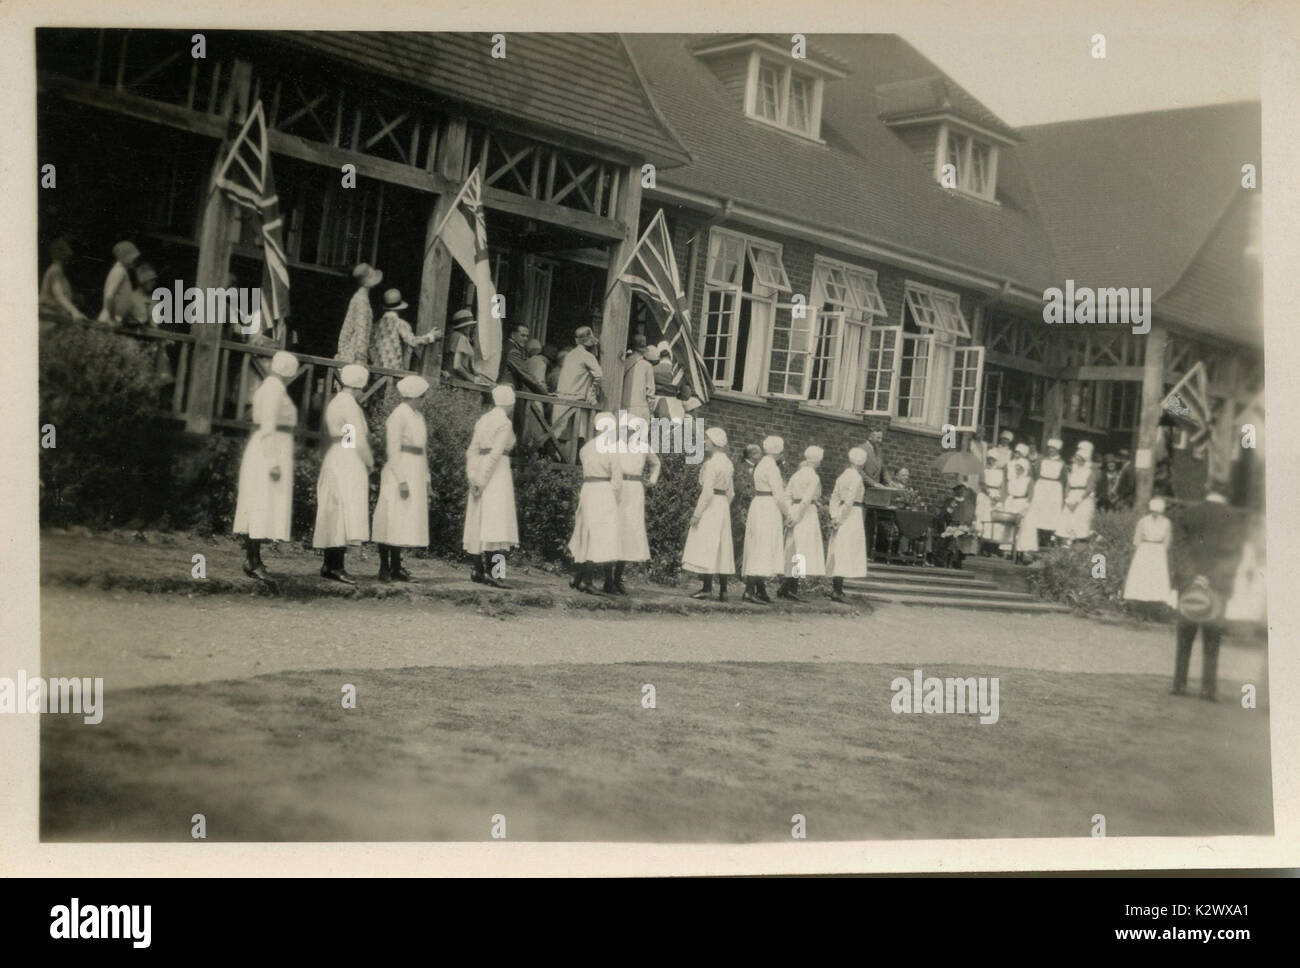 @1915, historique, au Royaume-Uni, les étudiantes infirmières en uniforme participent à une 'passing' cérémonie dans le parc d'un collège de soins infirmiers. Banque D'Images